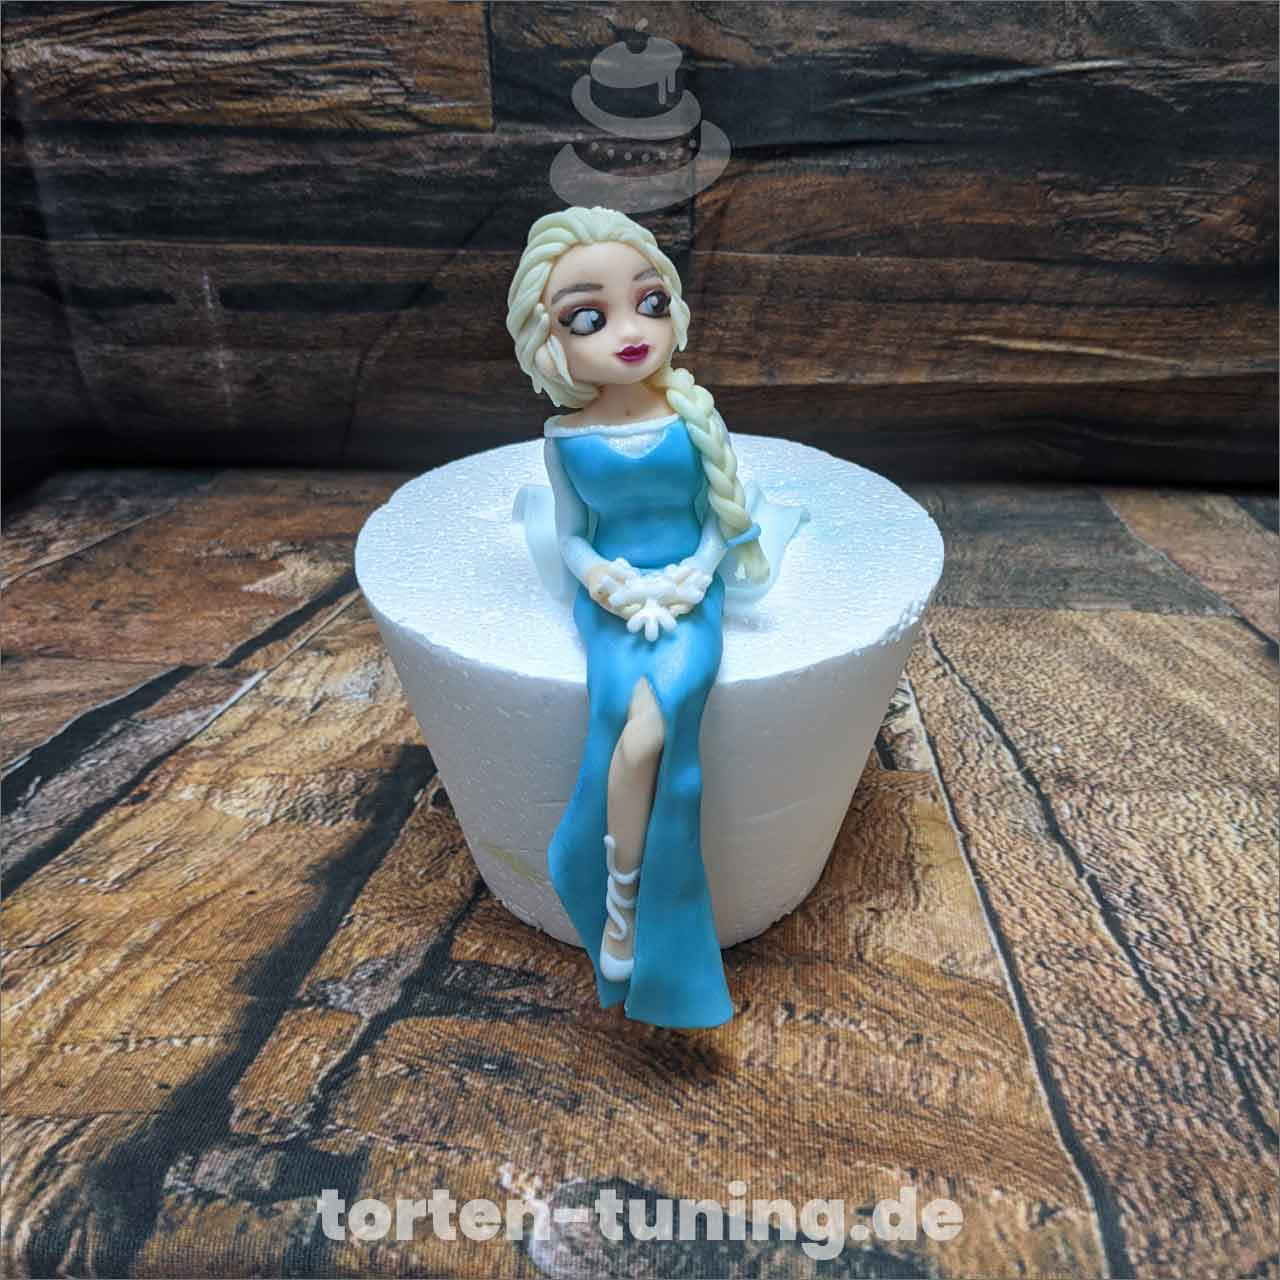 2 Bullyland Figuren Tortenfiguren Kuchenfiguren Disney Frozen Eiskönigin Set 